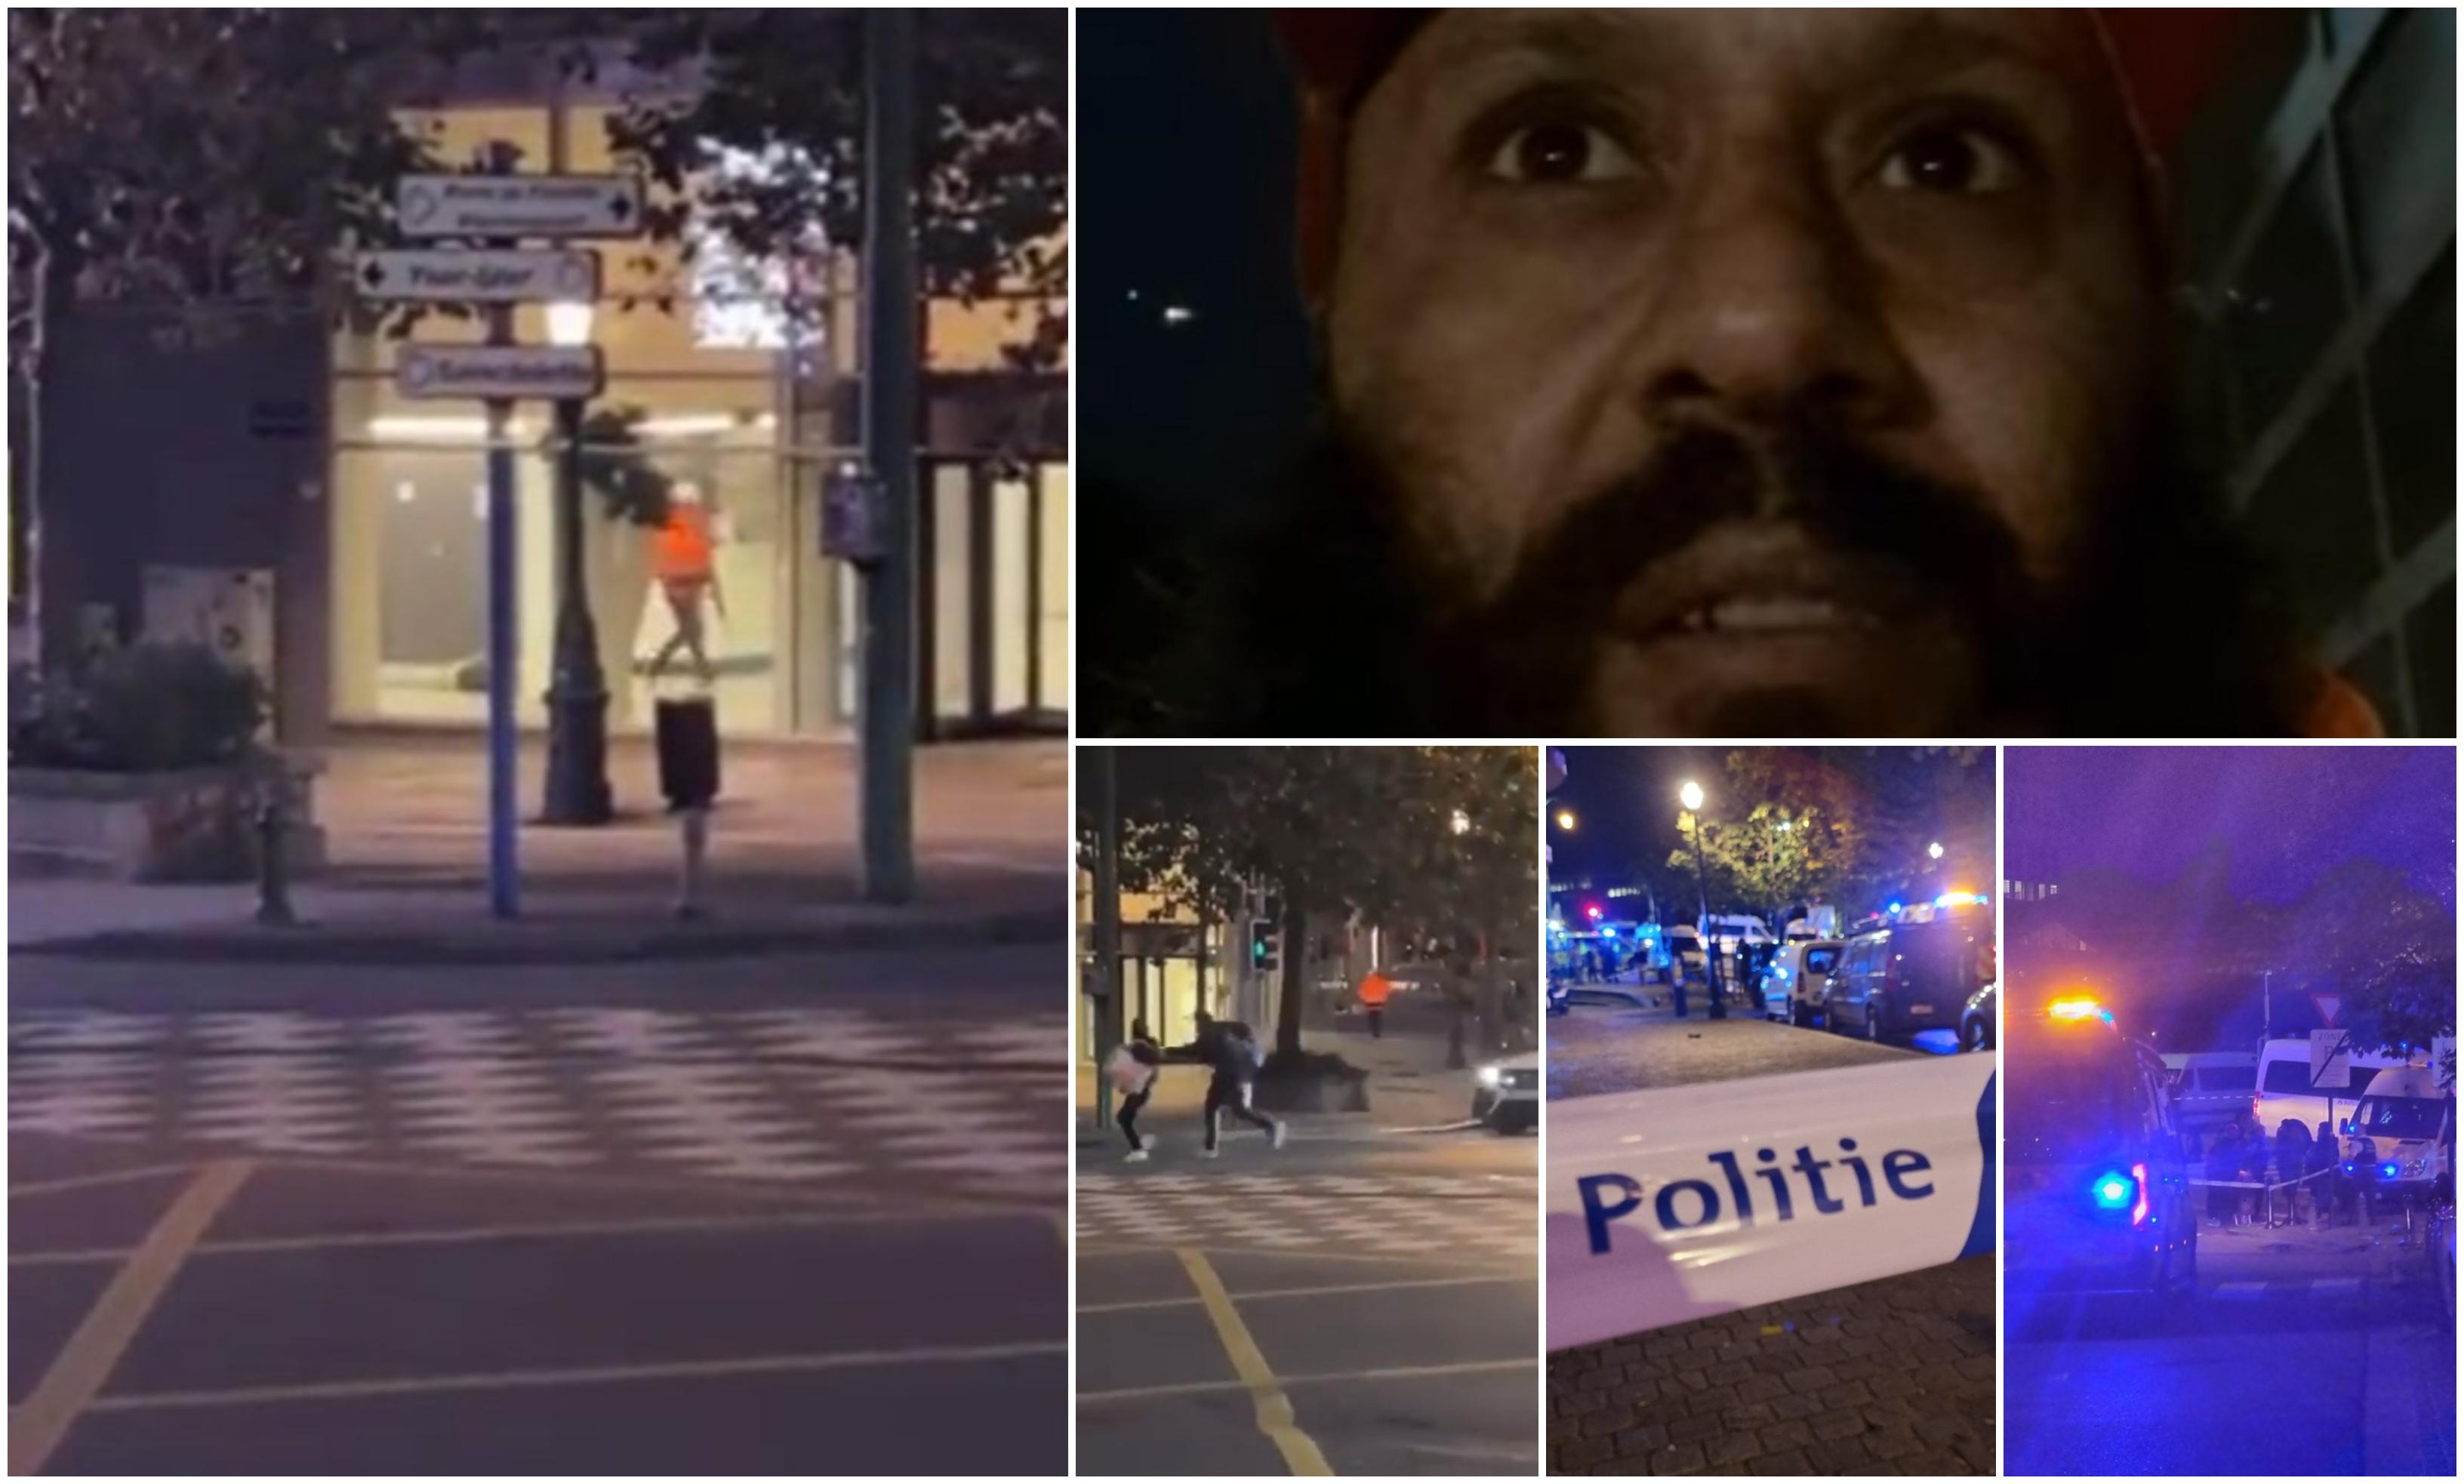 Atac armat în Bruxelles. Cel puţin doi oameni au fost împuşcaţi mortal. Imagini şocante surprinse în centrul oraşului